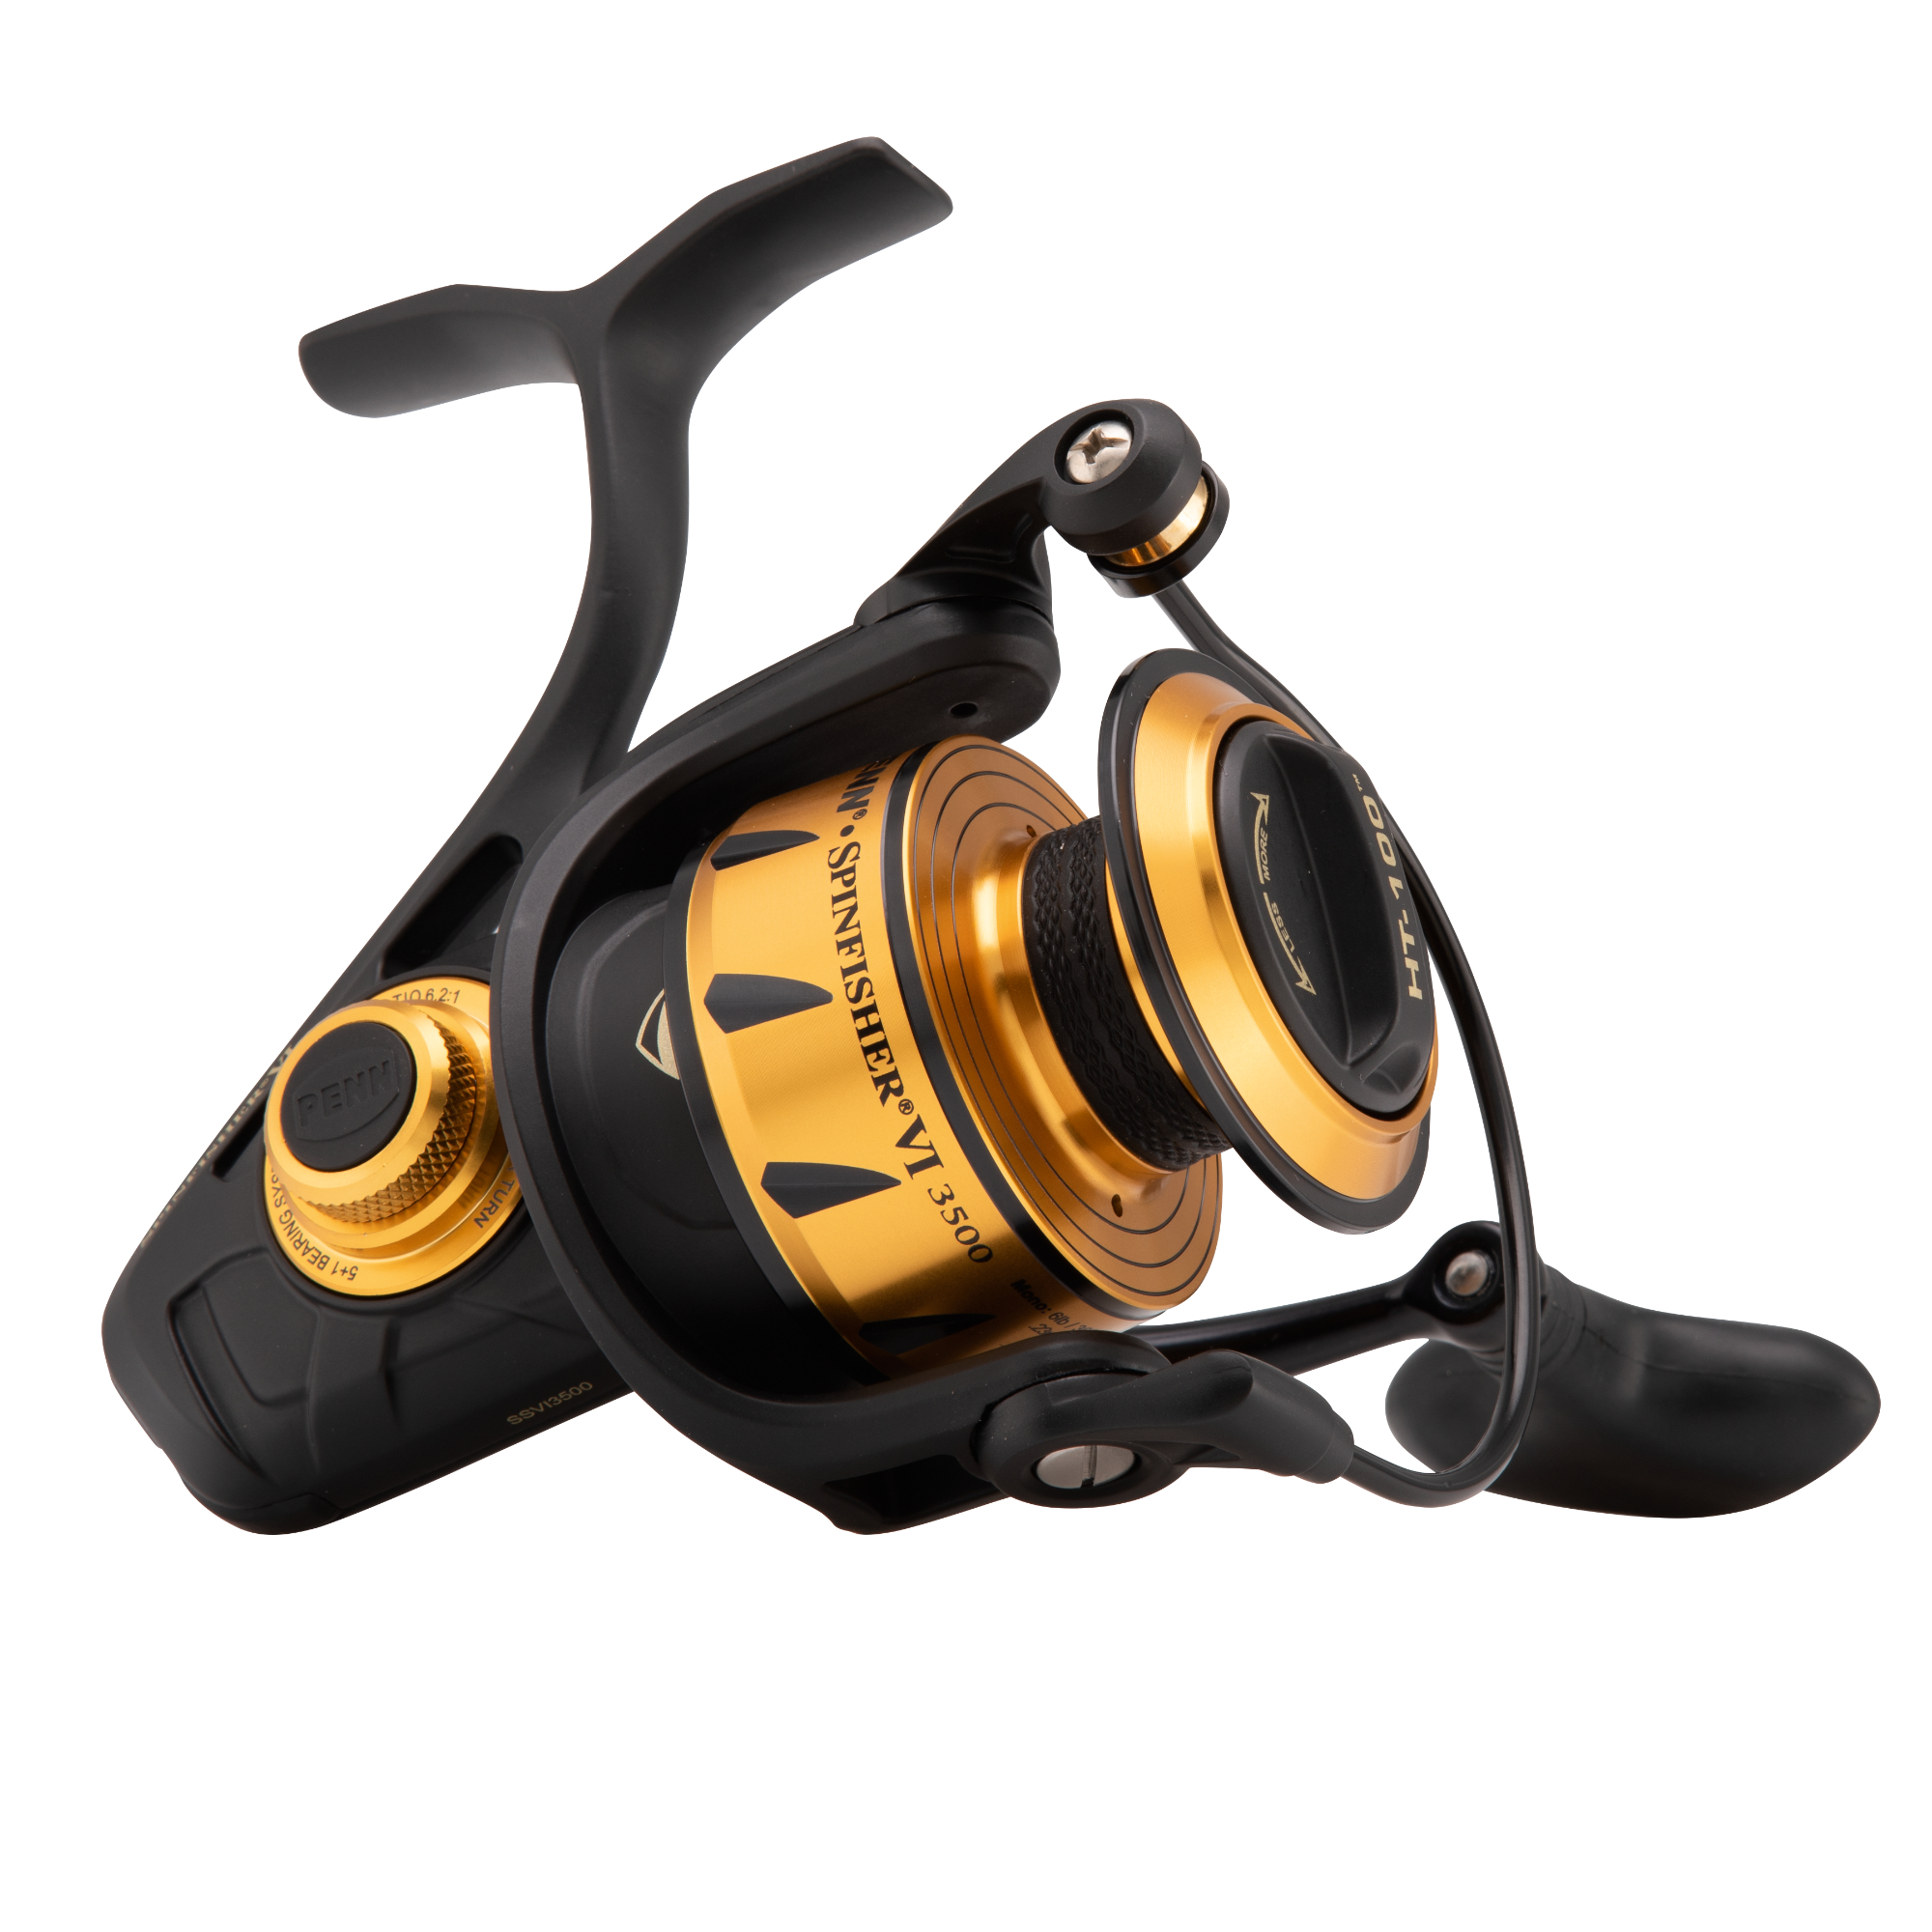 PENN Slammer 360 Spinning Reels - Brand New Fishing Reels +